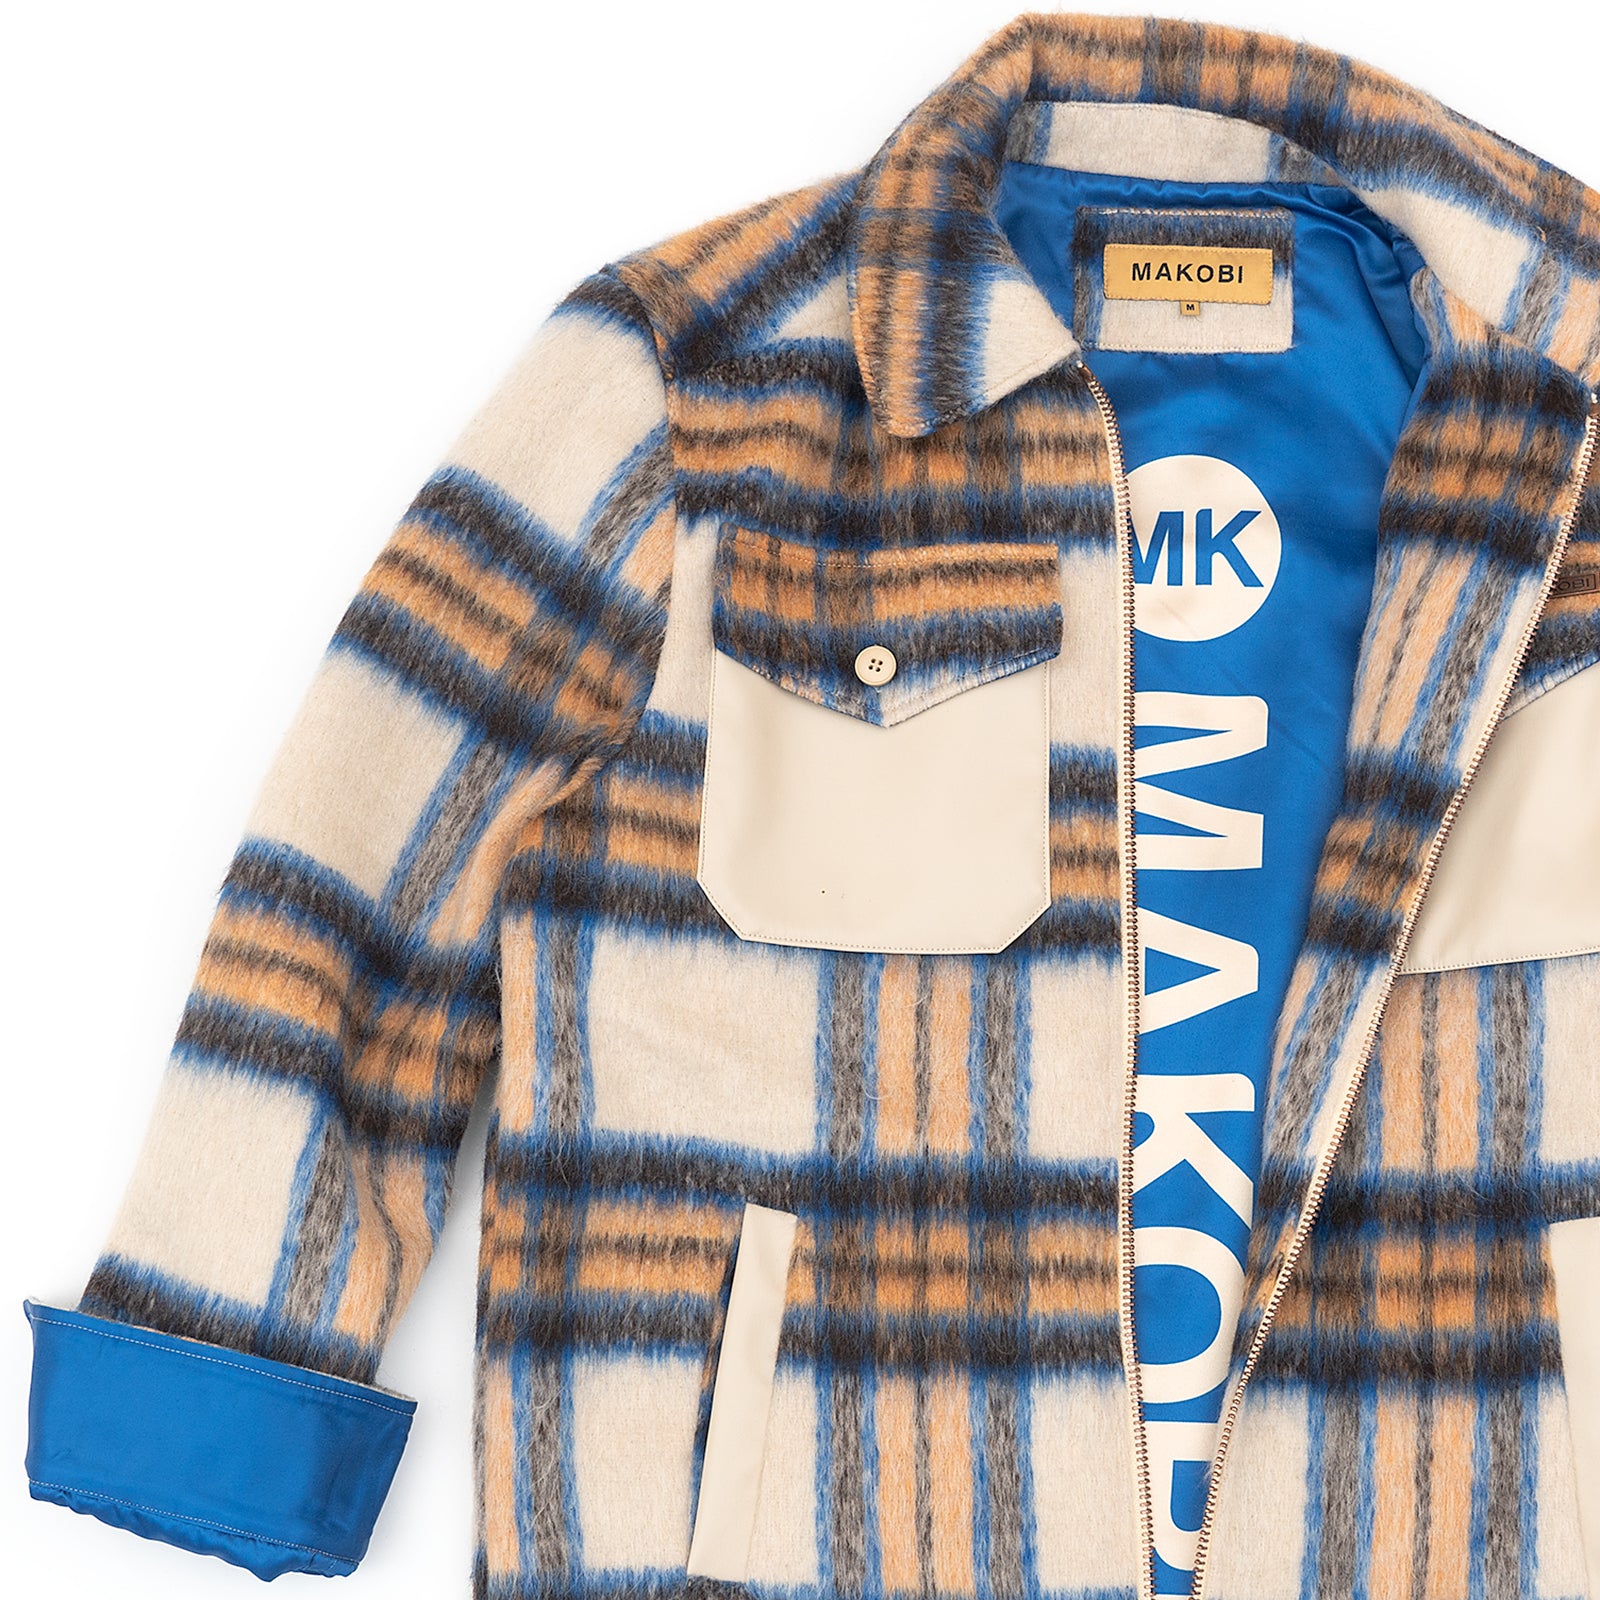 M1028 Gabana Shirt Jacket - Khaki